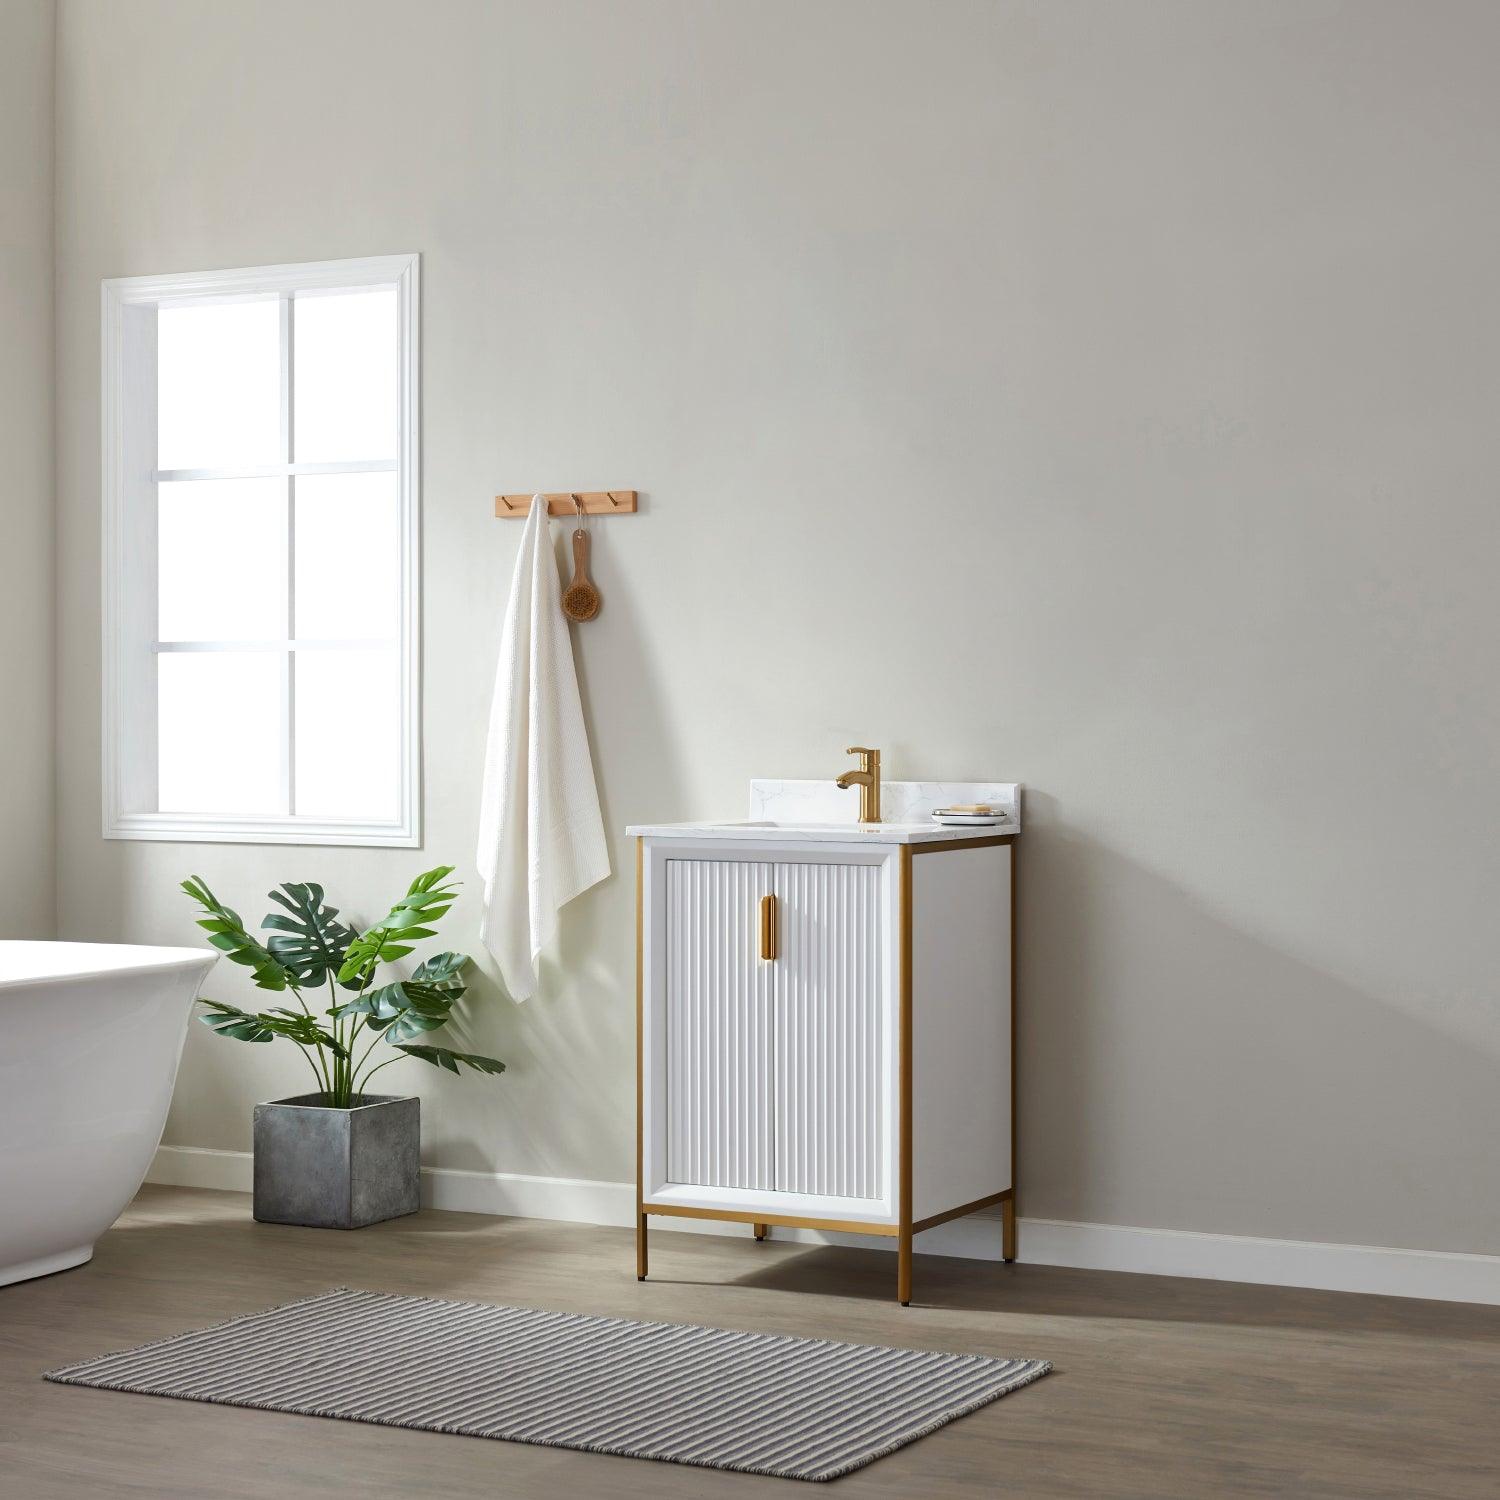 Vinnova Granada Single Vanity with White Composite Grain Stone Countertop With Mirror - Sea & Stone Bath